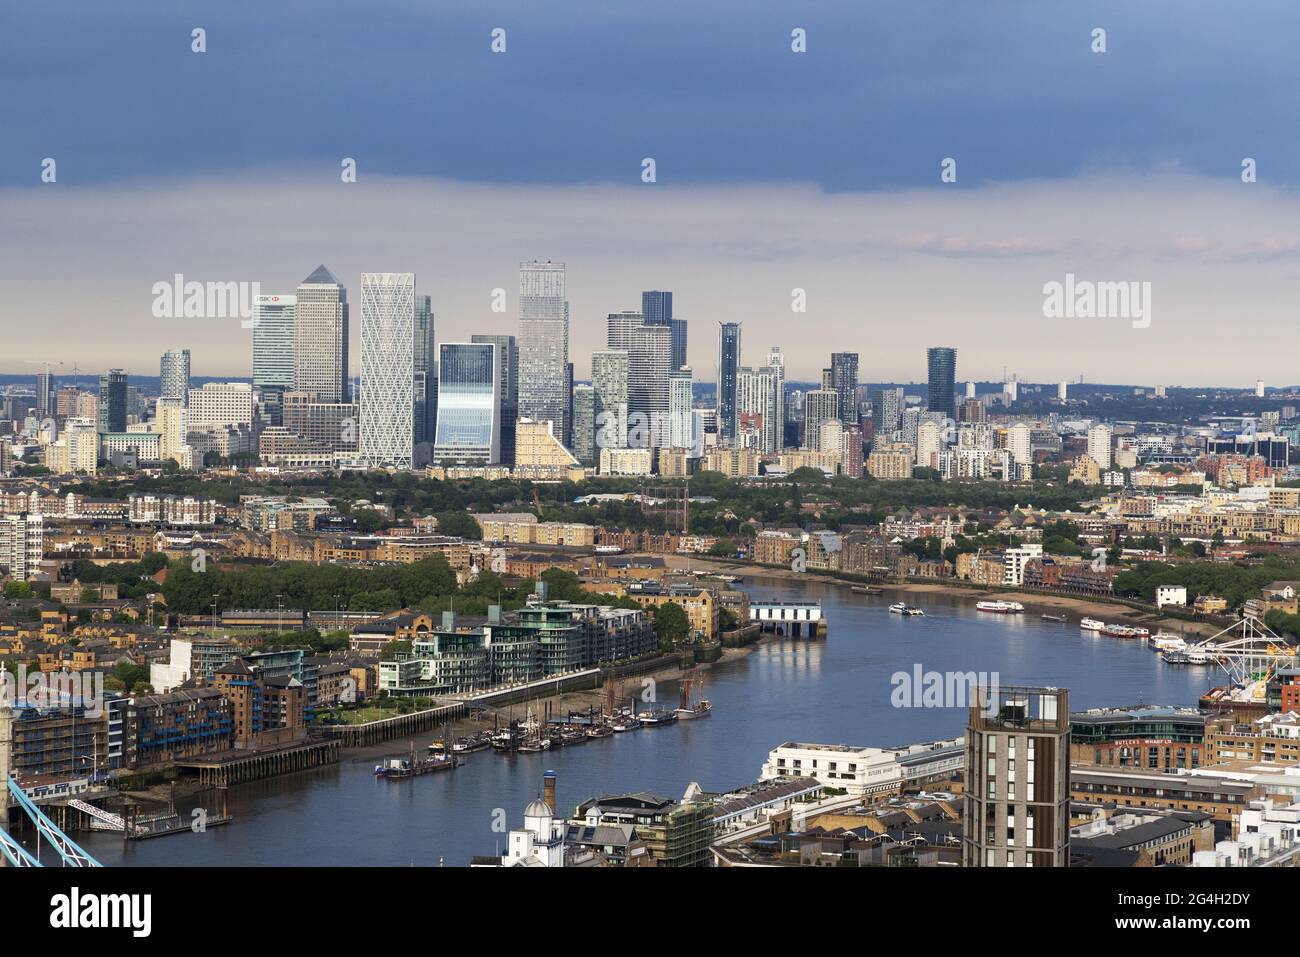 Vue sur Londres ; vue vers l'est sur la ville de Londres ; vue depuis le Shard sur la Tamise jusqu'à la City of London et Canary Wharf, Londres, Angleterre, Royaume-Uni Banque D'Images